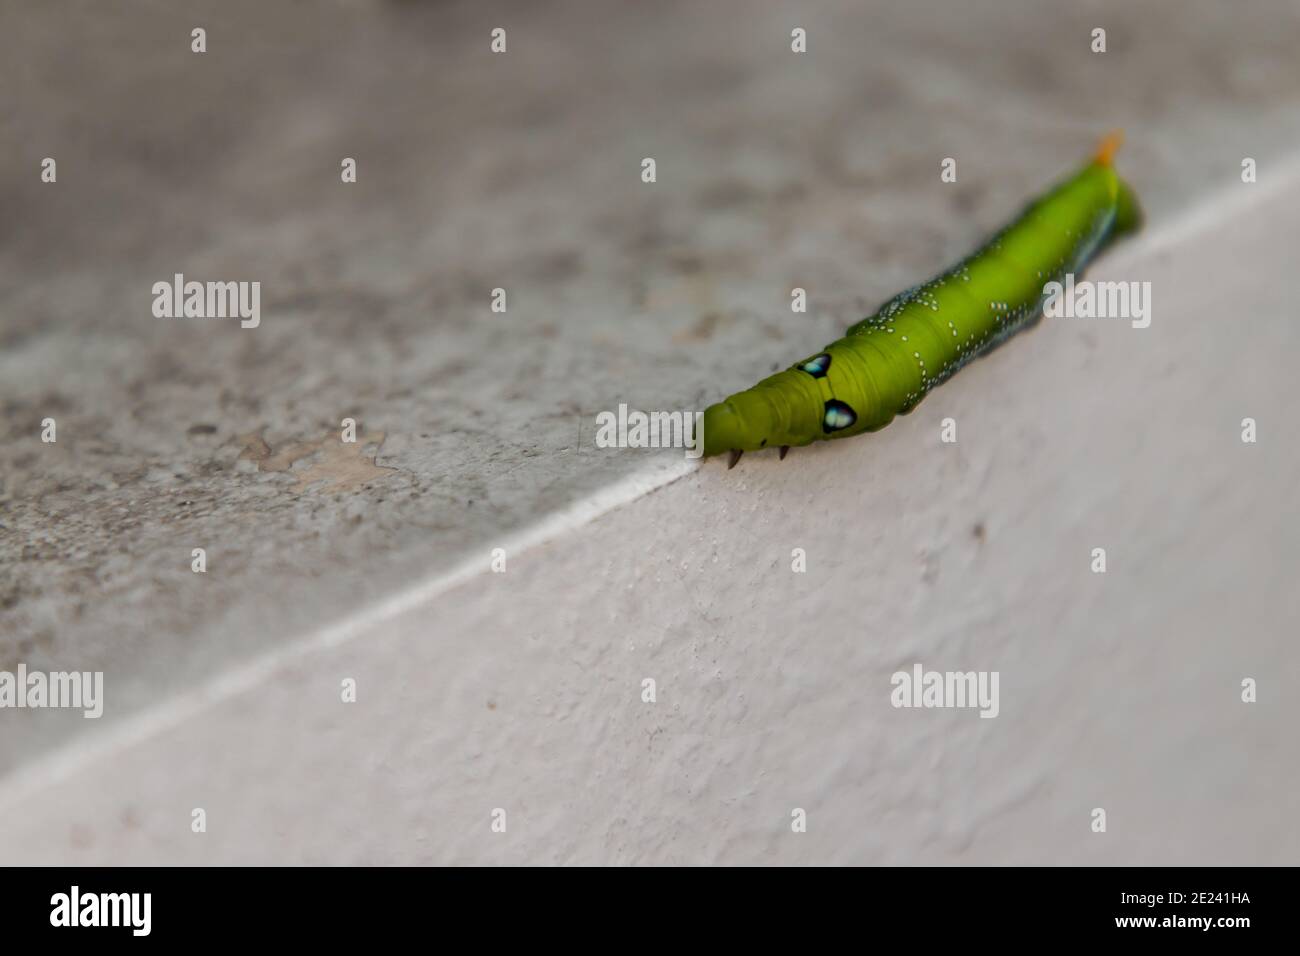 Gros plan de Big Green WORM ou Oleander Hawk Moth Caterpillar (Daphnis nerii, Sphingidae) Crawl sur le bord de la paroi blanche. Aucune mise au point, en particulier. Banque D'Images